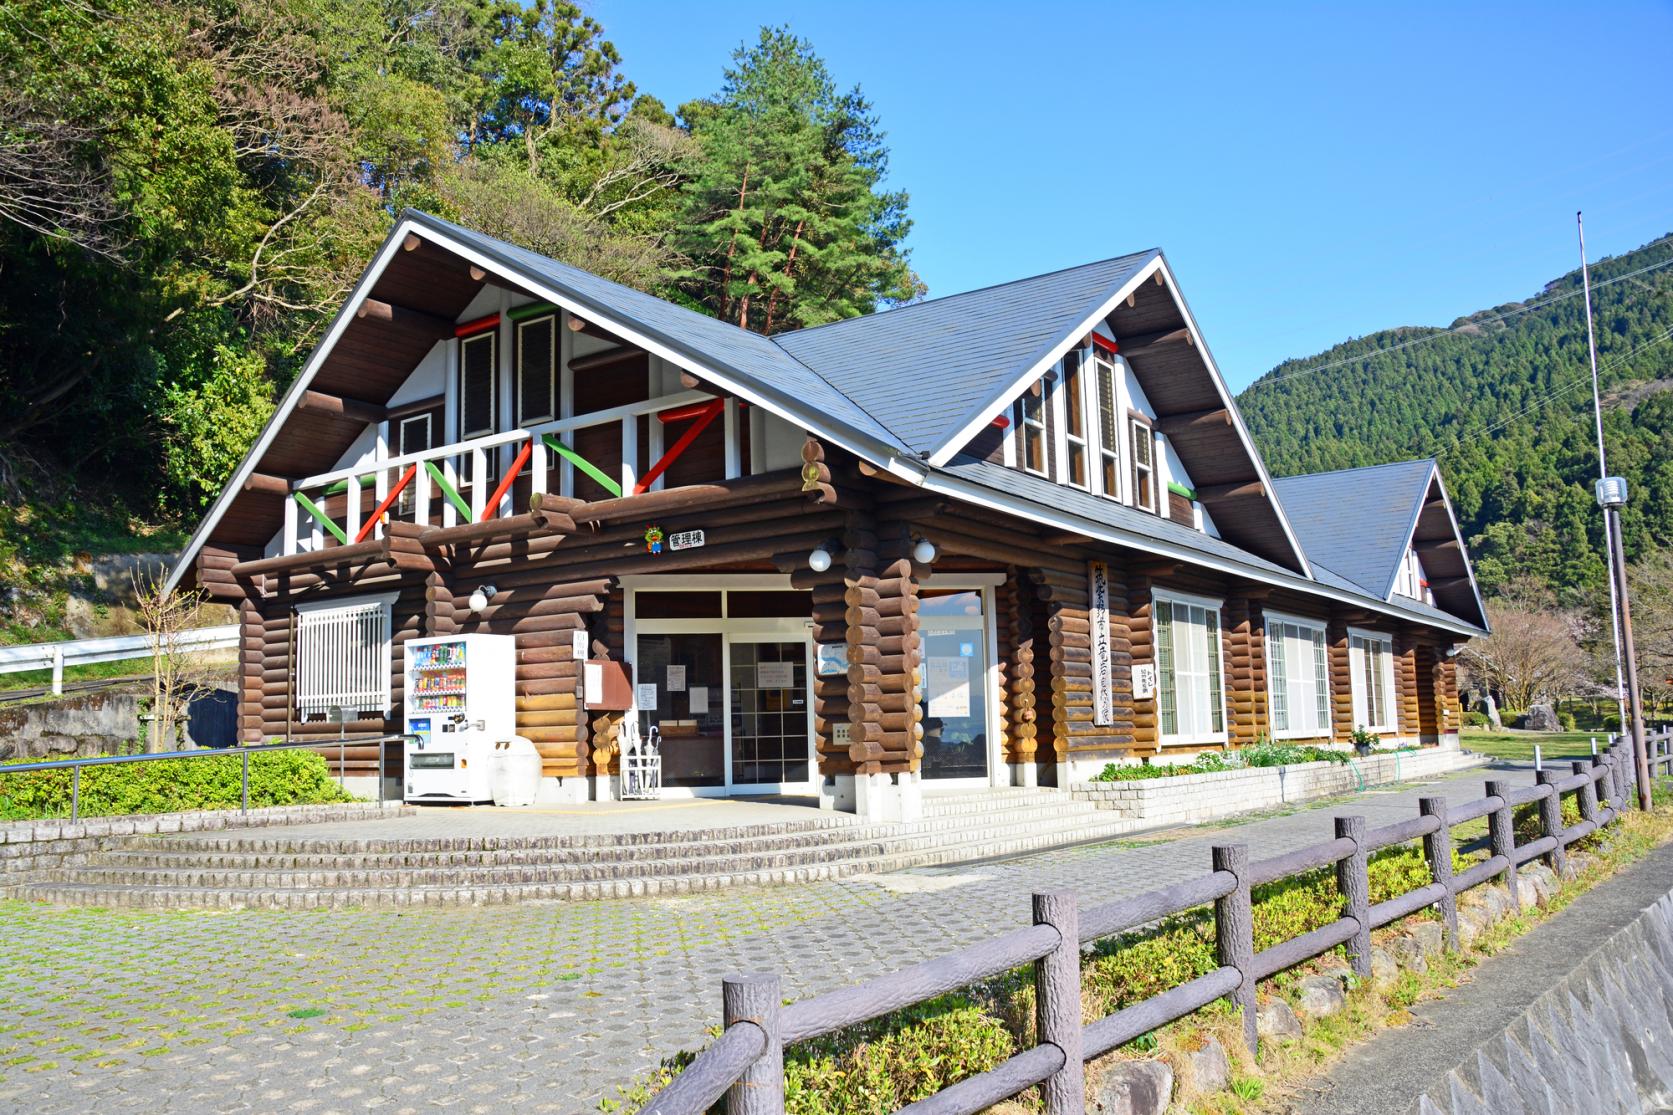 Chikushino Municipal Dragon Rock Nature House